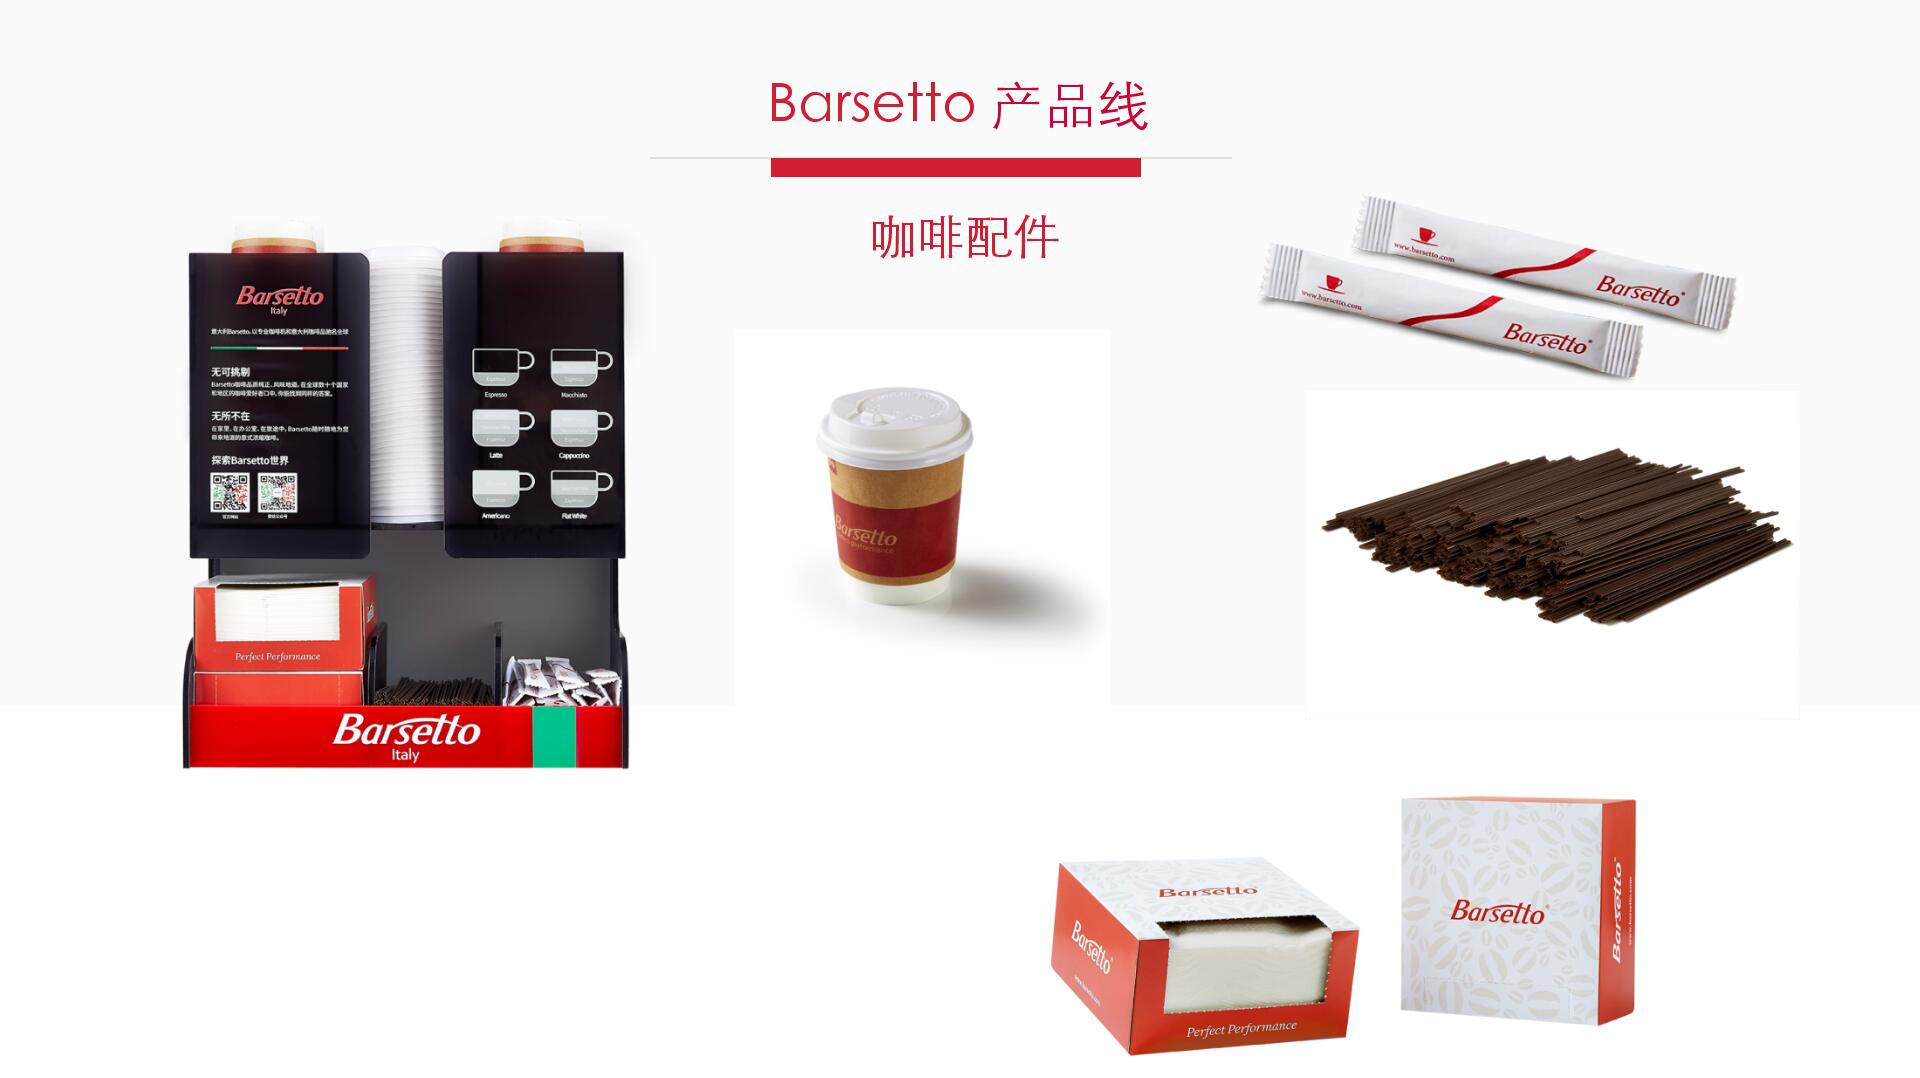 Barsetto 咖啡机方案 (13)